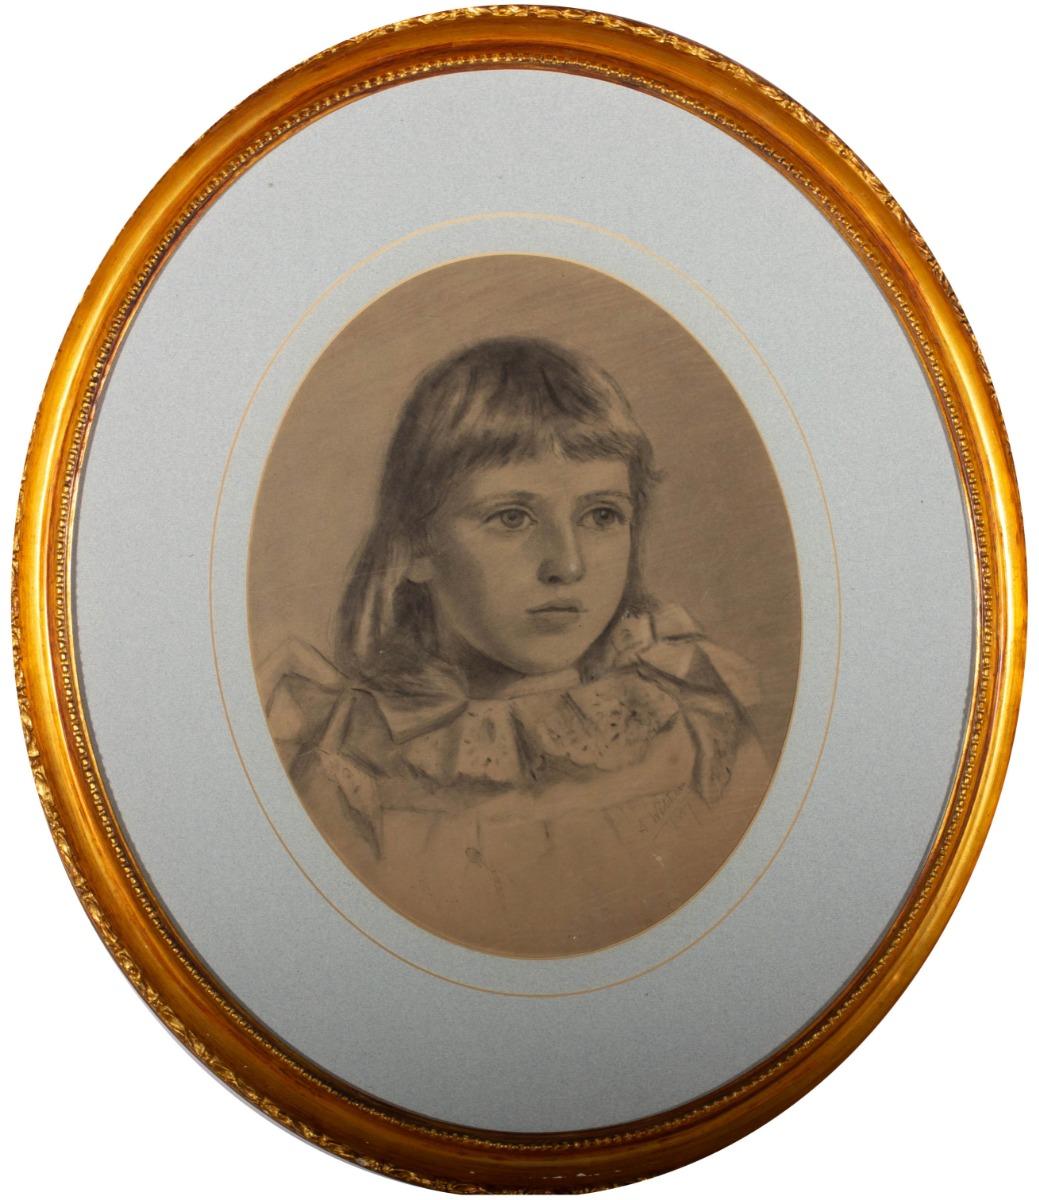 Un portrait au fusain d'un garçon. Présenté dans une double monture ovale bleue et un cadre ovale en bois à effet doré. Signé et daté dans le coin inférieur droit. On a tissé.
